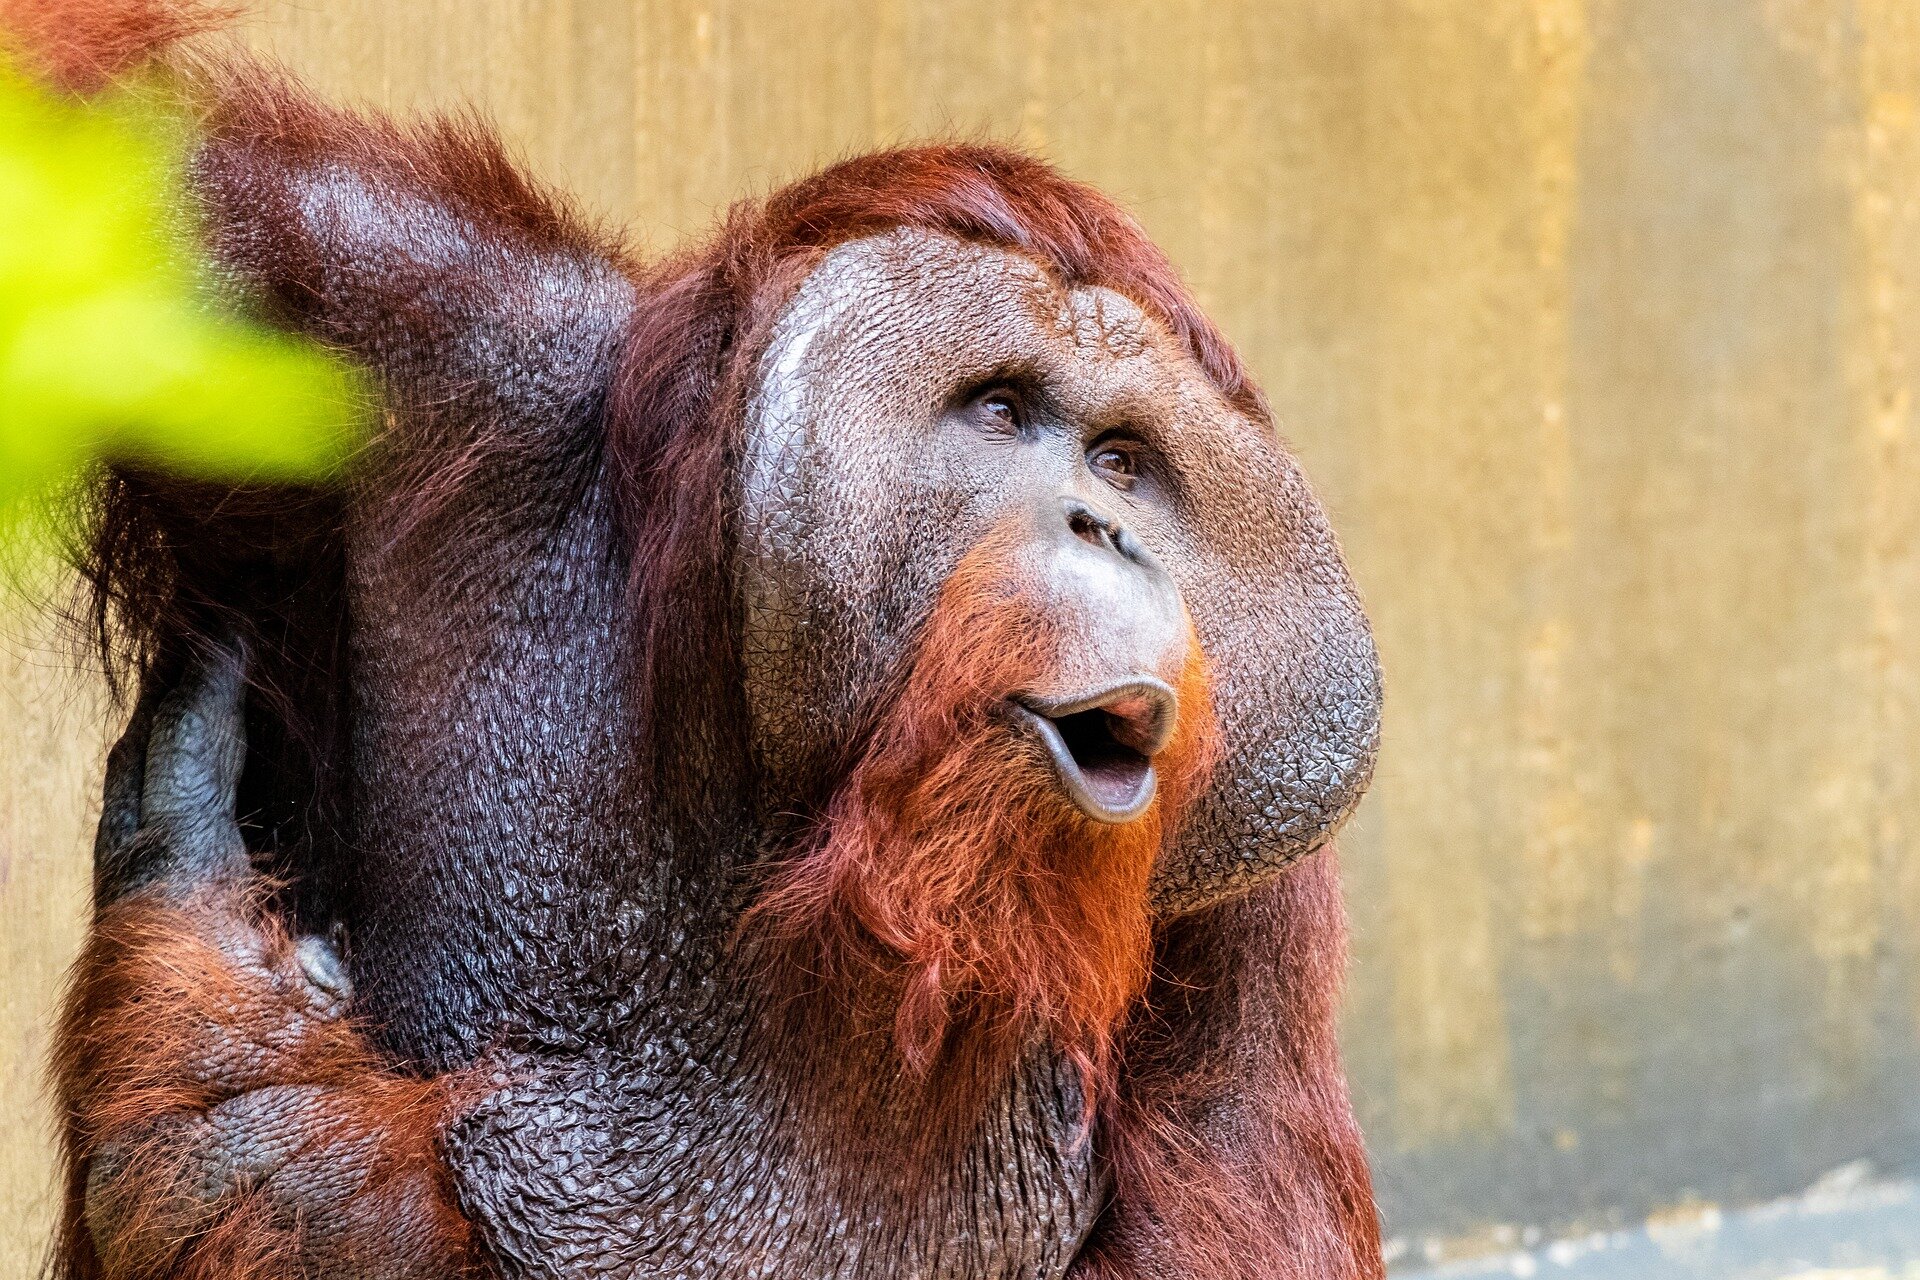 Orangutan communication sheds light on human speech origins